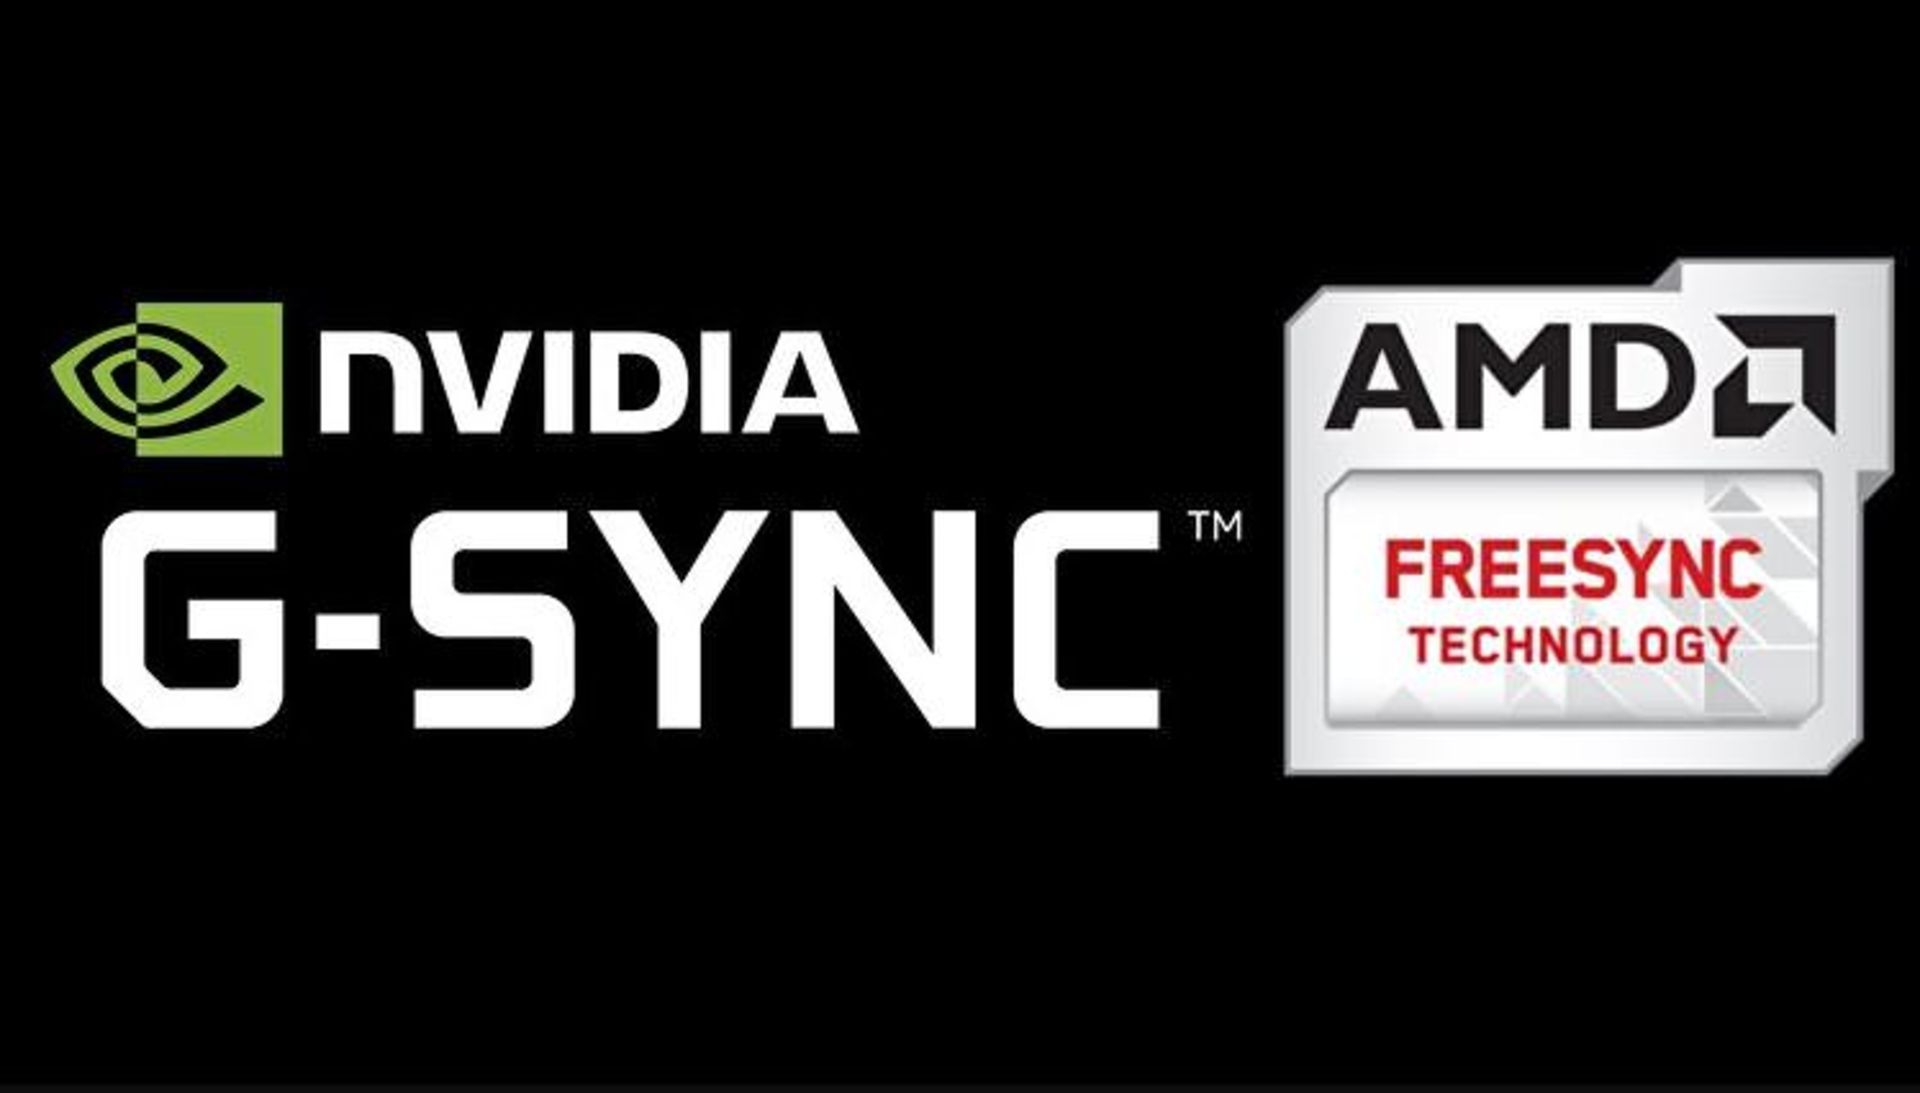 فناوری همگام سازی AMD FreeSync و انویدیا G-Sync